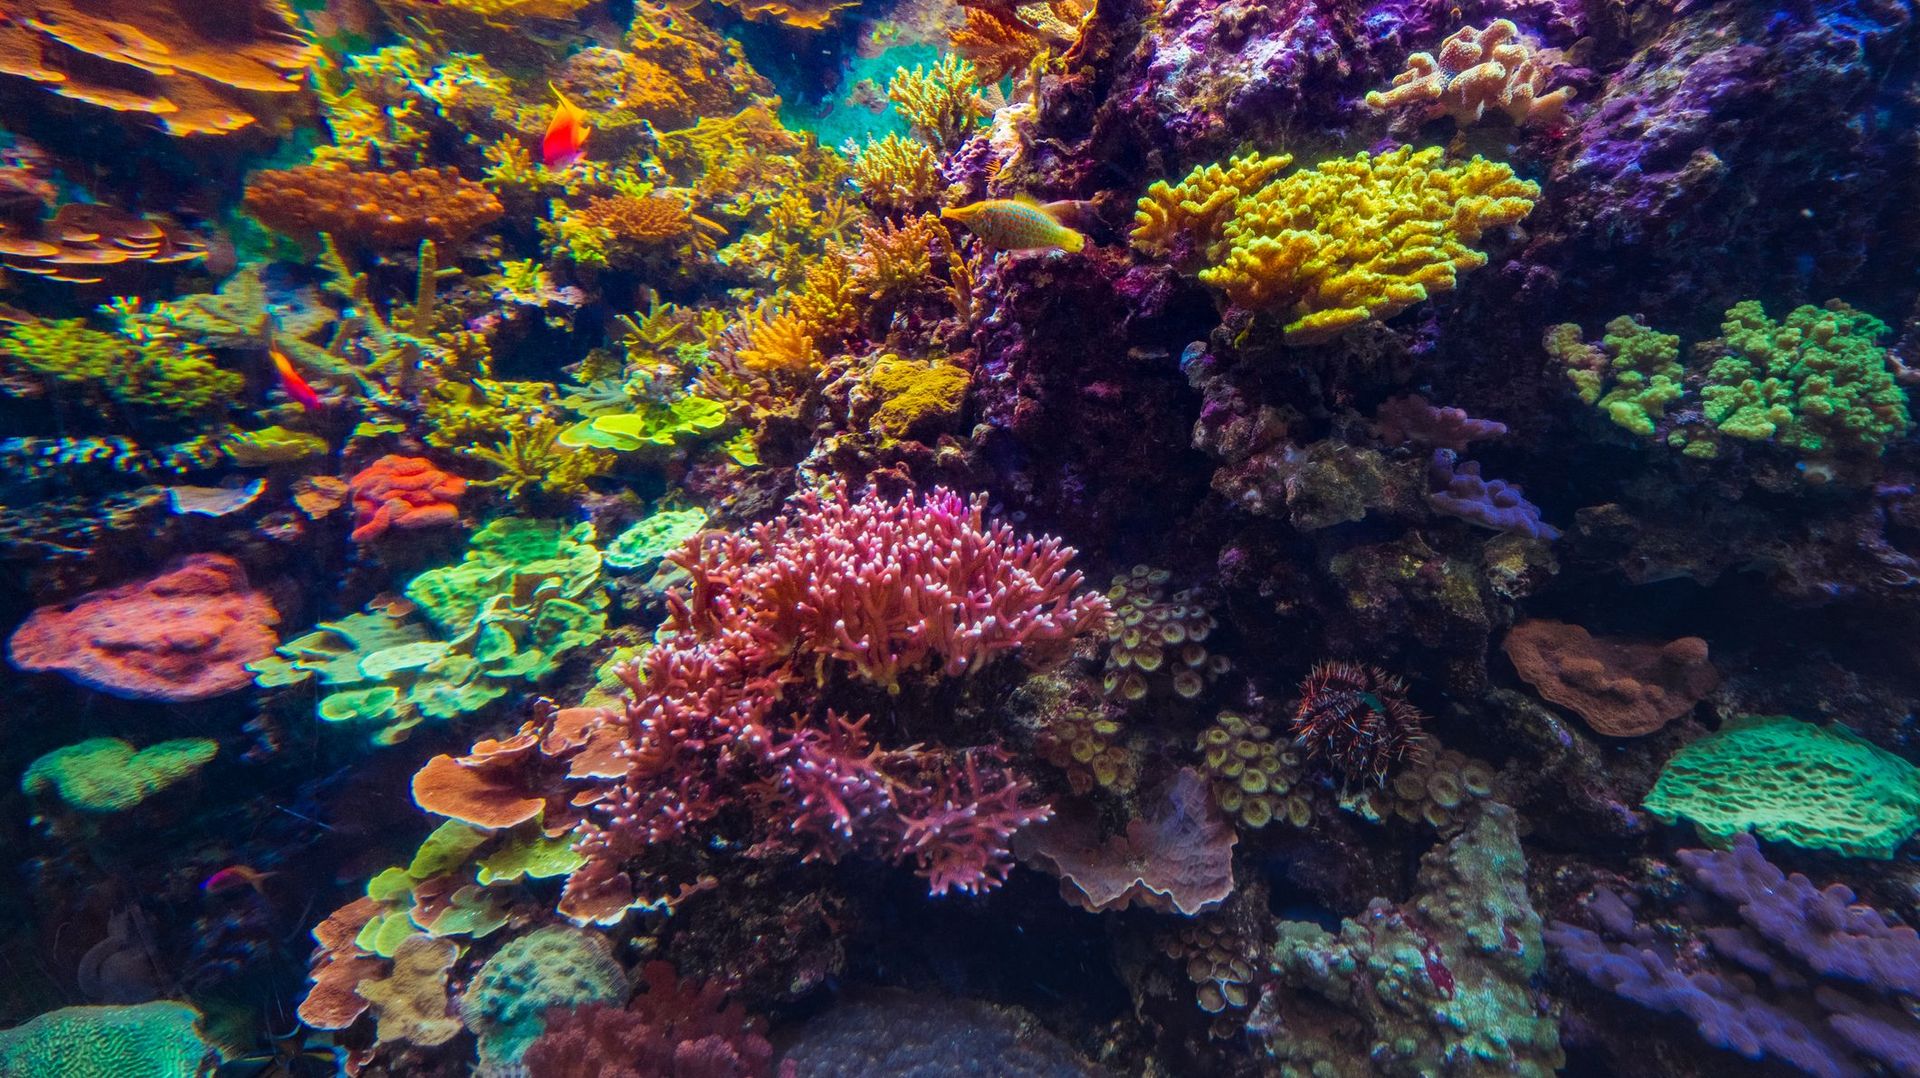 Certains types de coraux résisteraient mieux au changement climatique selon leur couleur